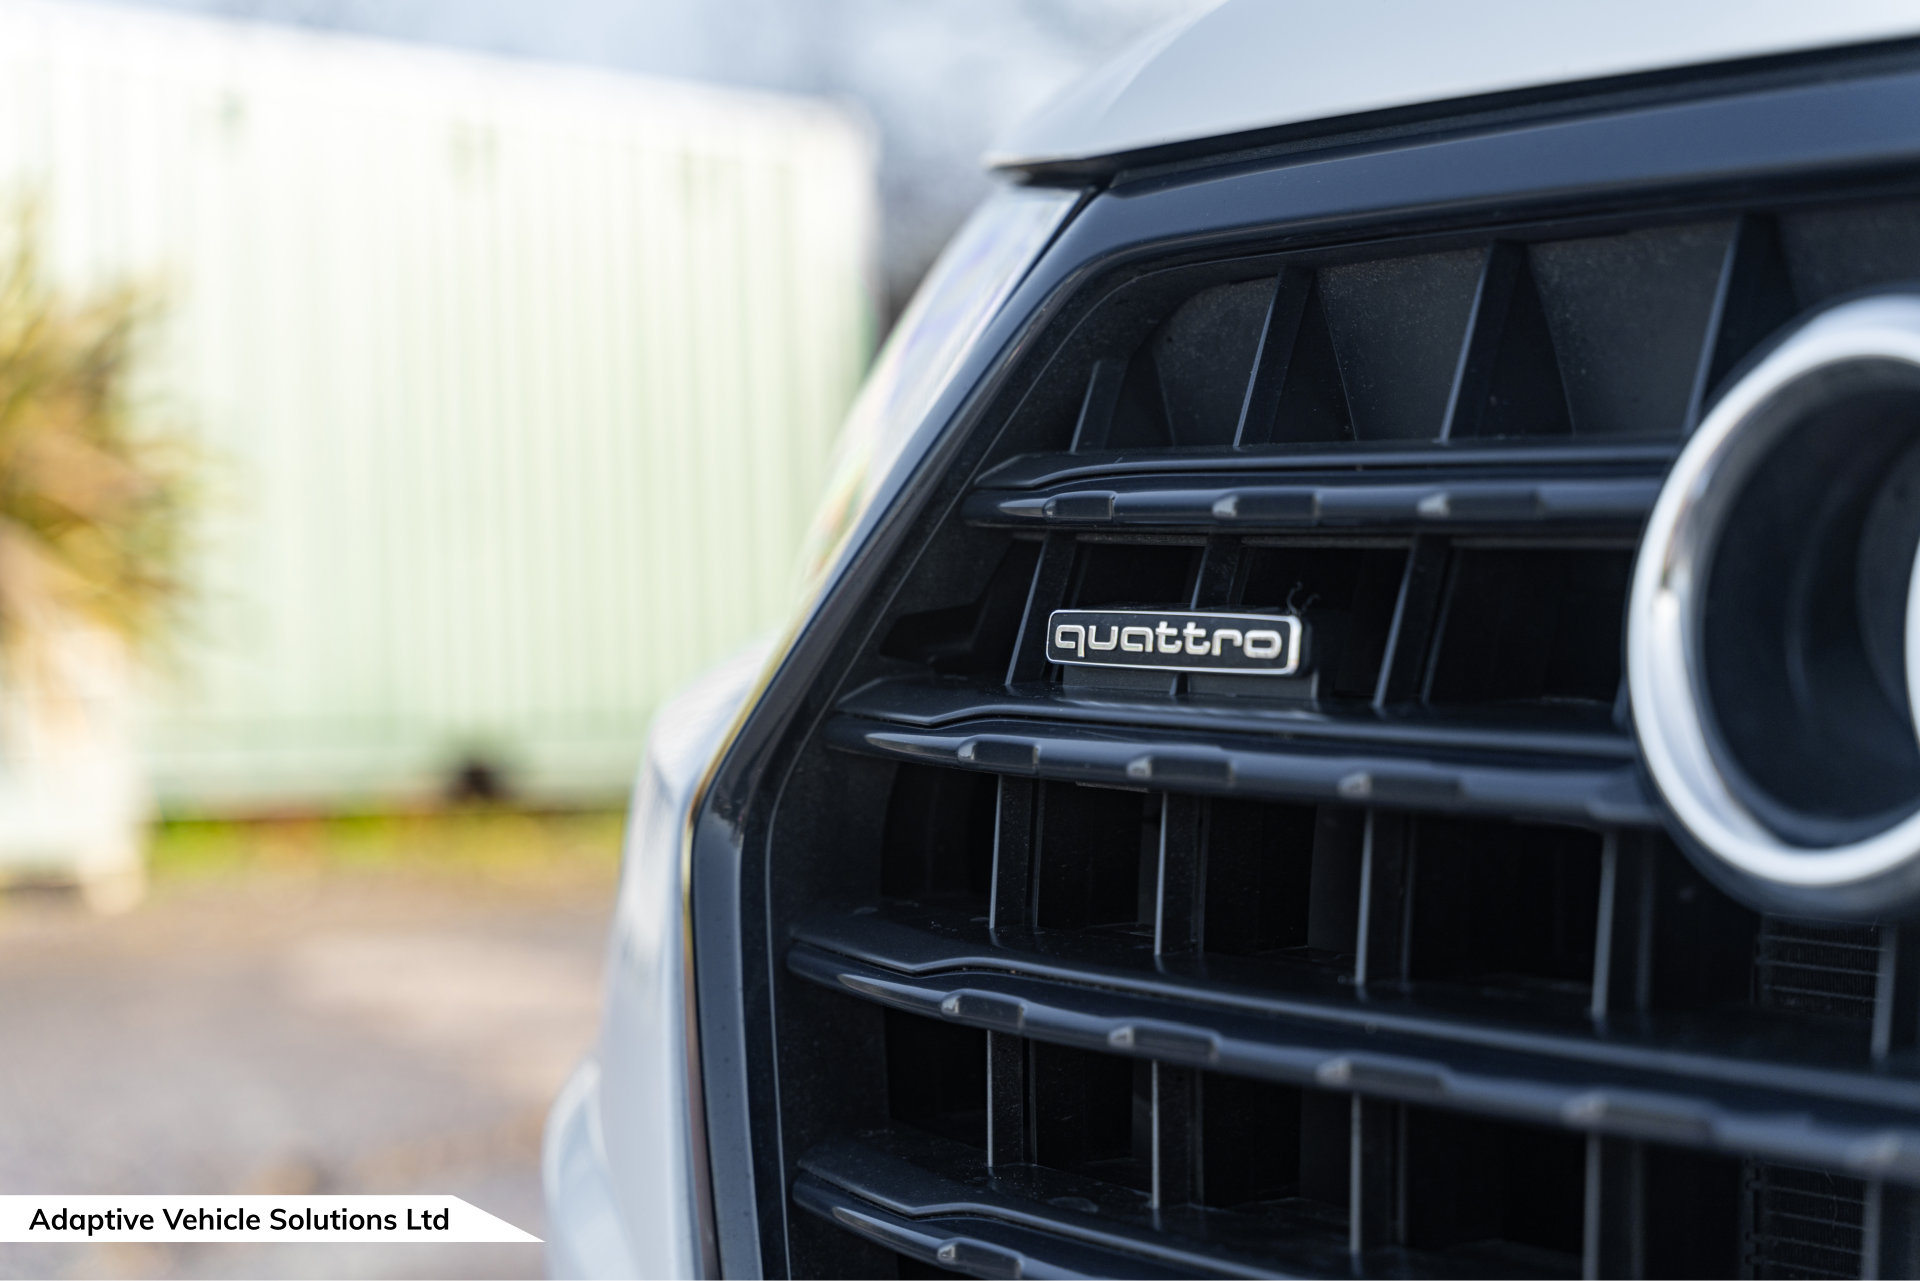 2019 Audi Q7 Vorsprung White quattro badge